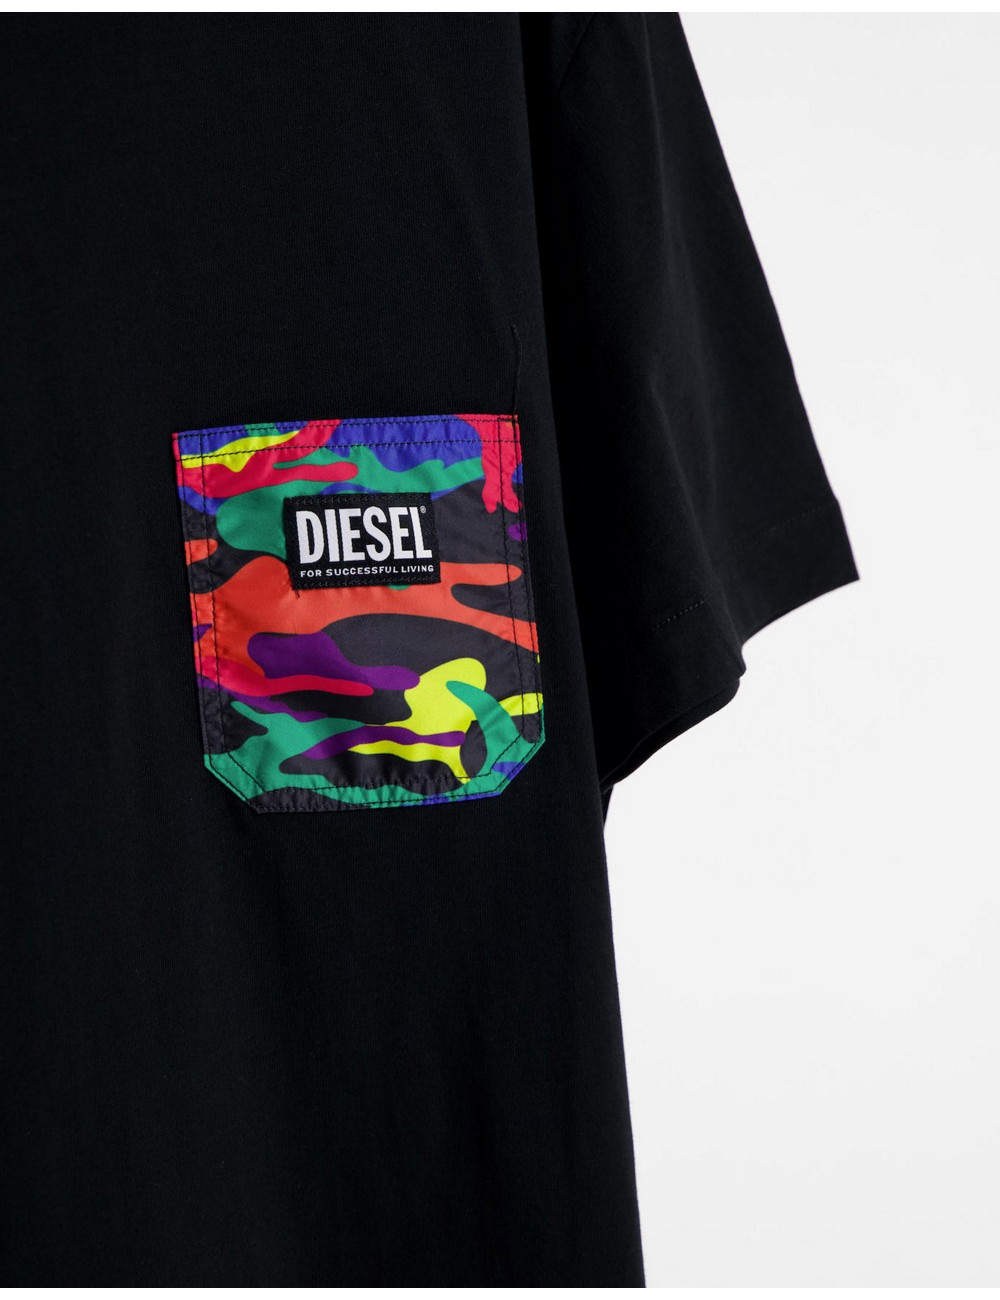 Diesel xPride t-shirt in black